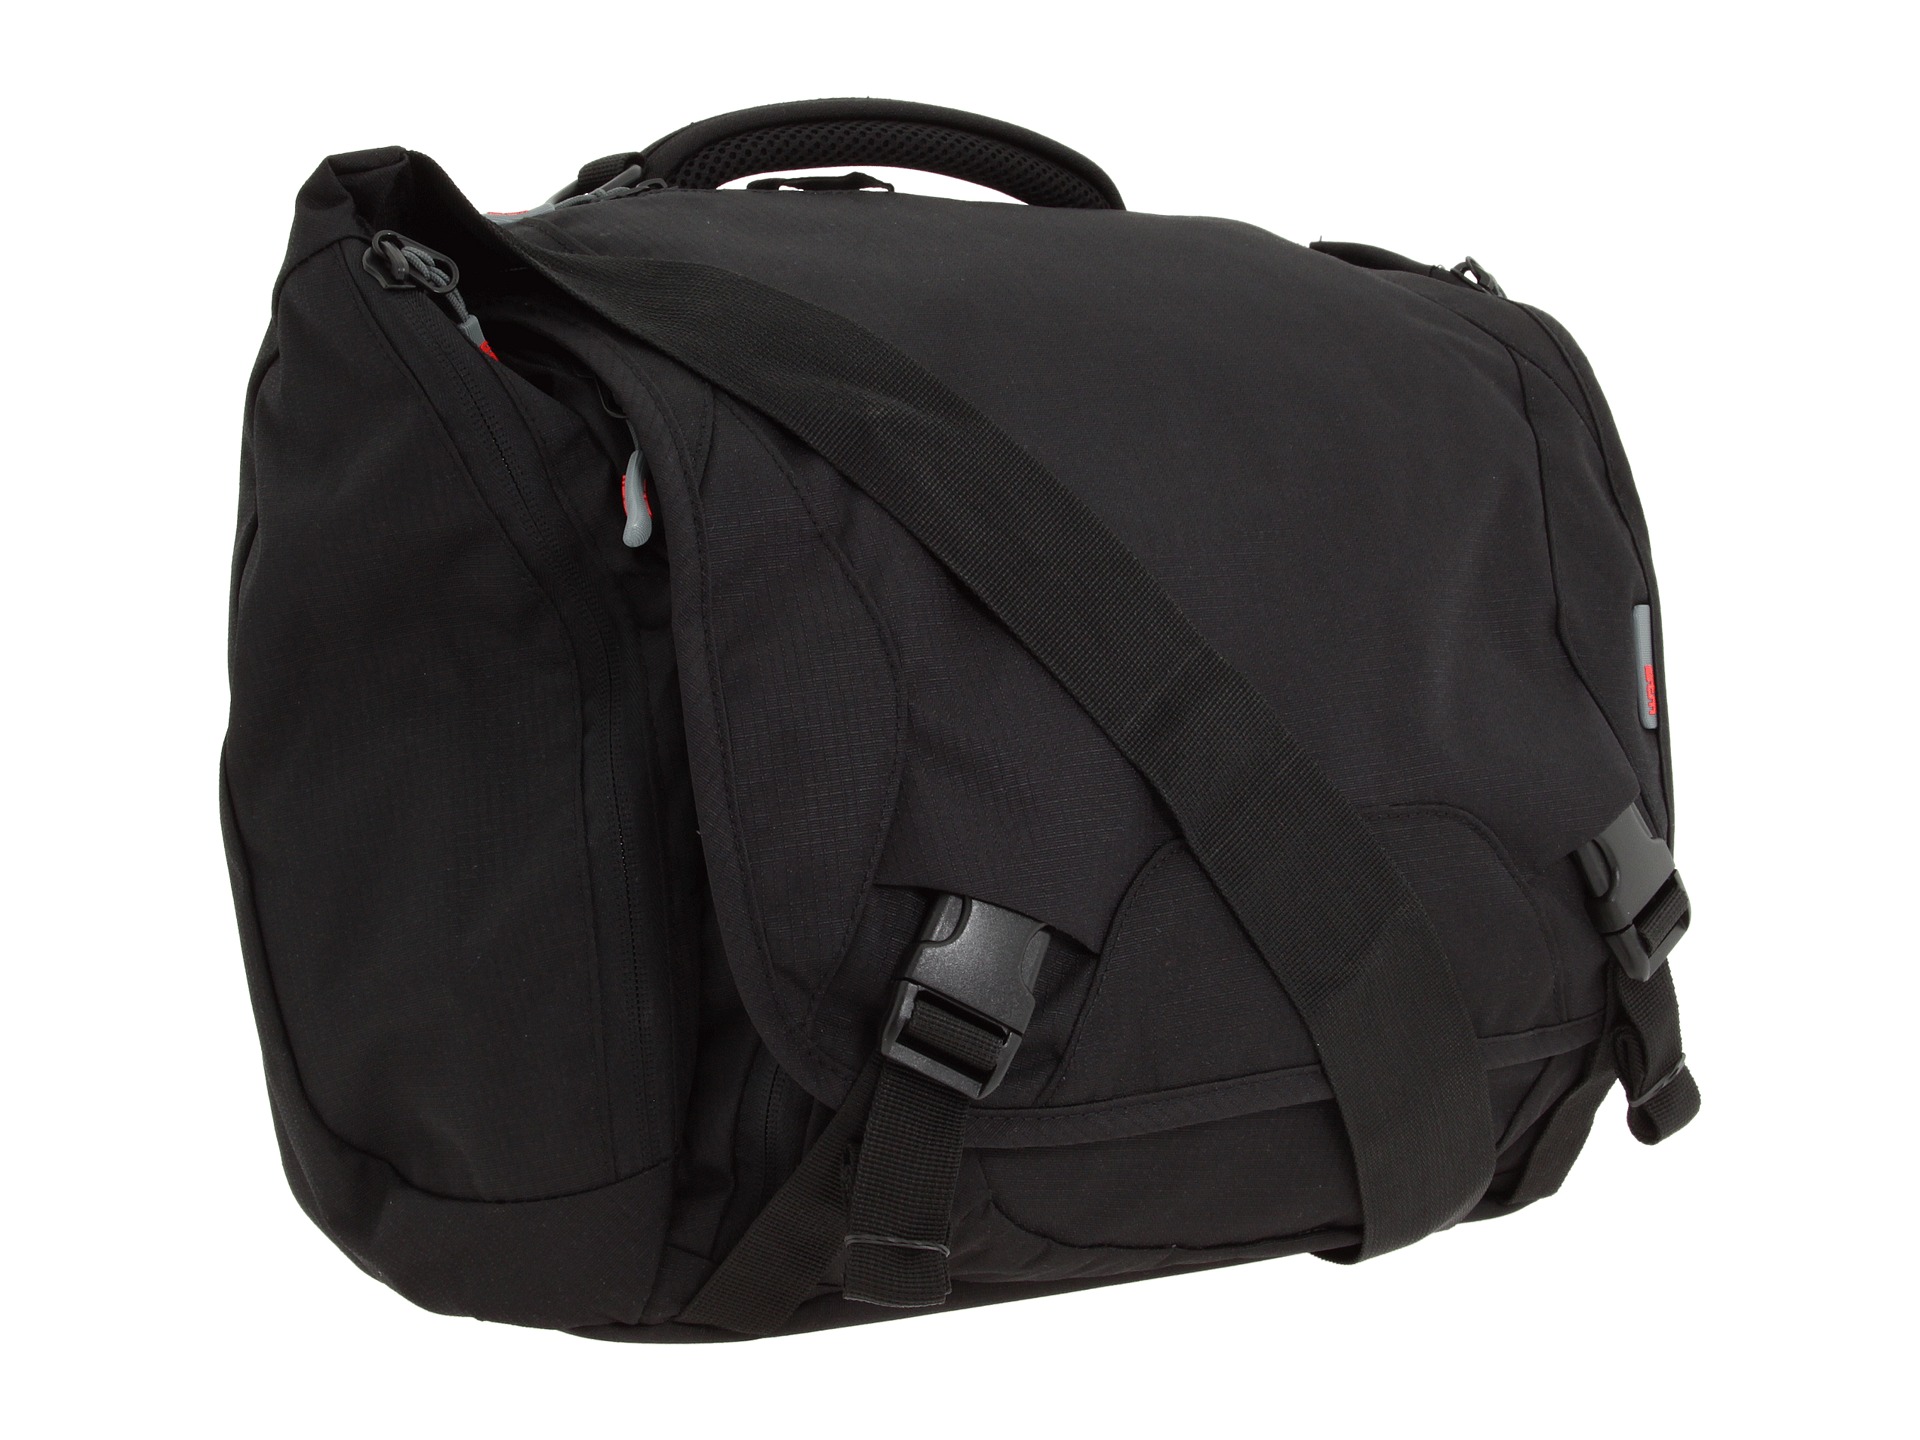 STM Bags Velo Small Laptop Shoulder Bag $100.00 